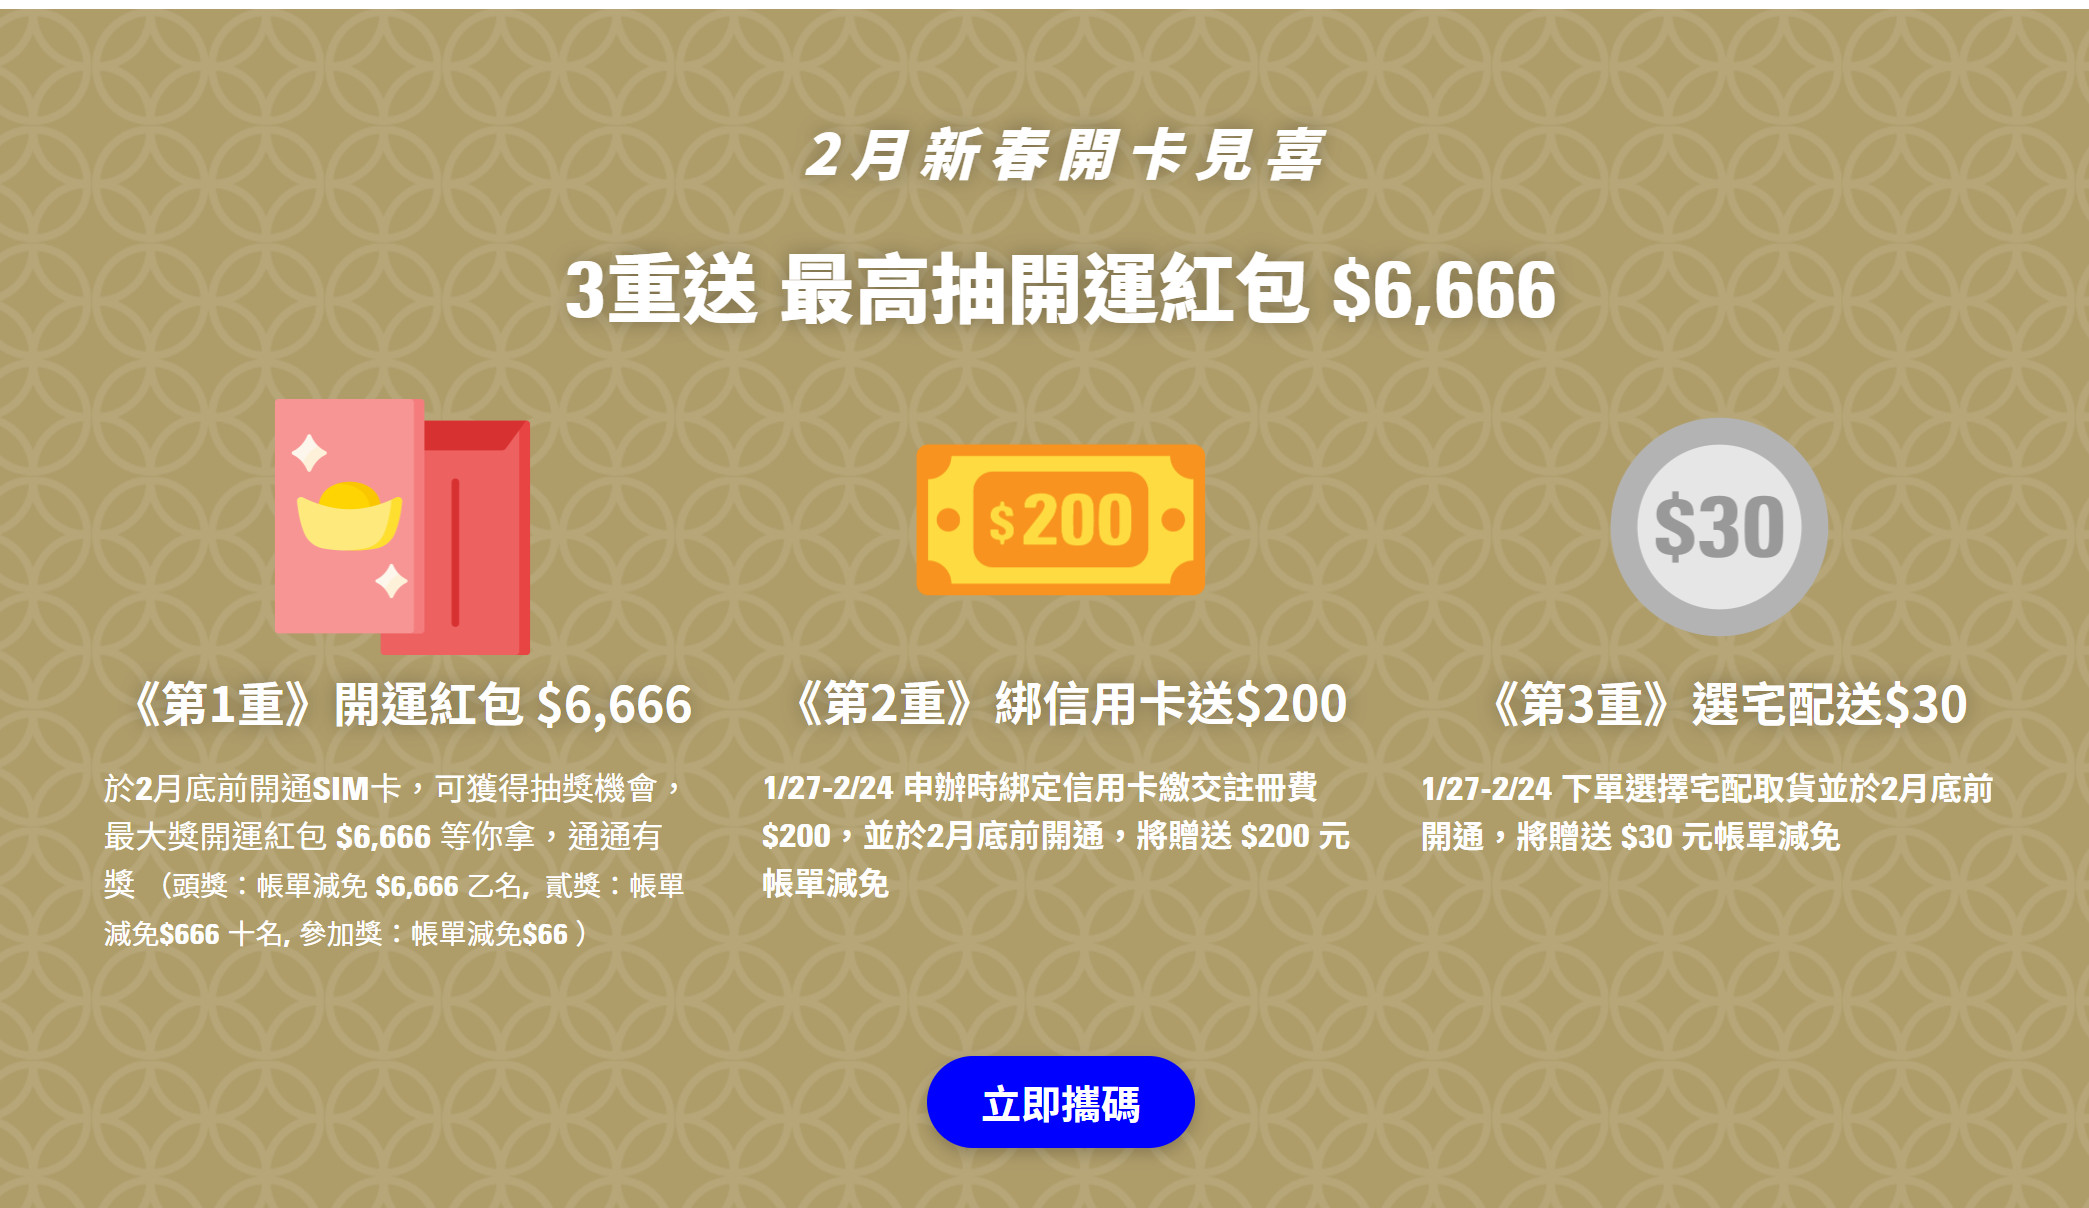 【無框行動】新春專案，中華電信大4G網路吃到飽466元，低流量只要166元!超適合搭配台灣之星雙11專案。 - 無框行動ptt - 敗家達人推薦